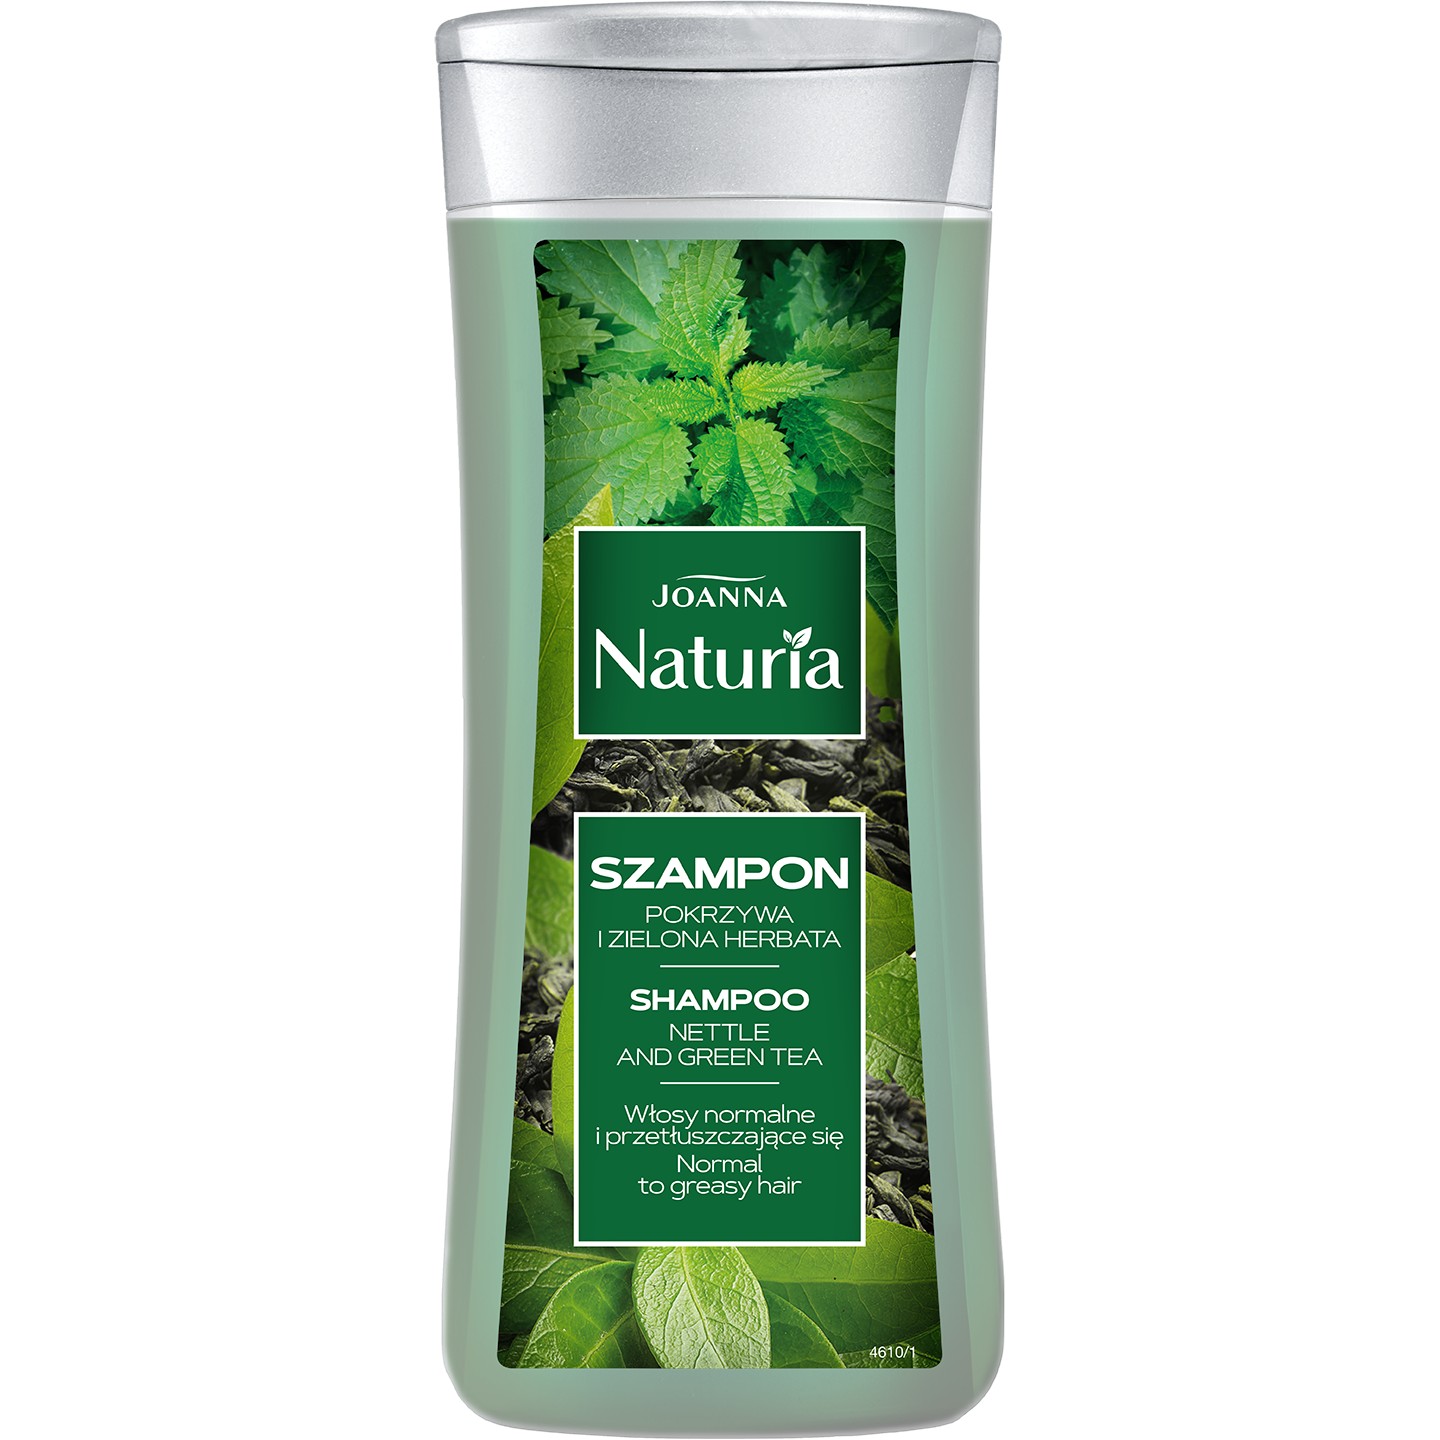 1 naturia pokrzywa i zielona herbata szampon skład